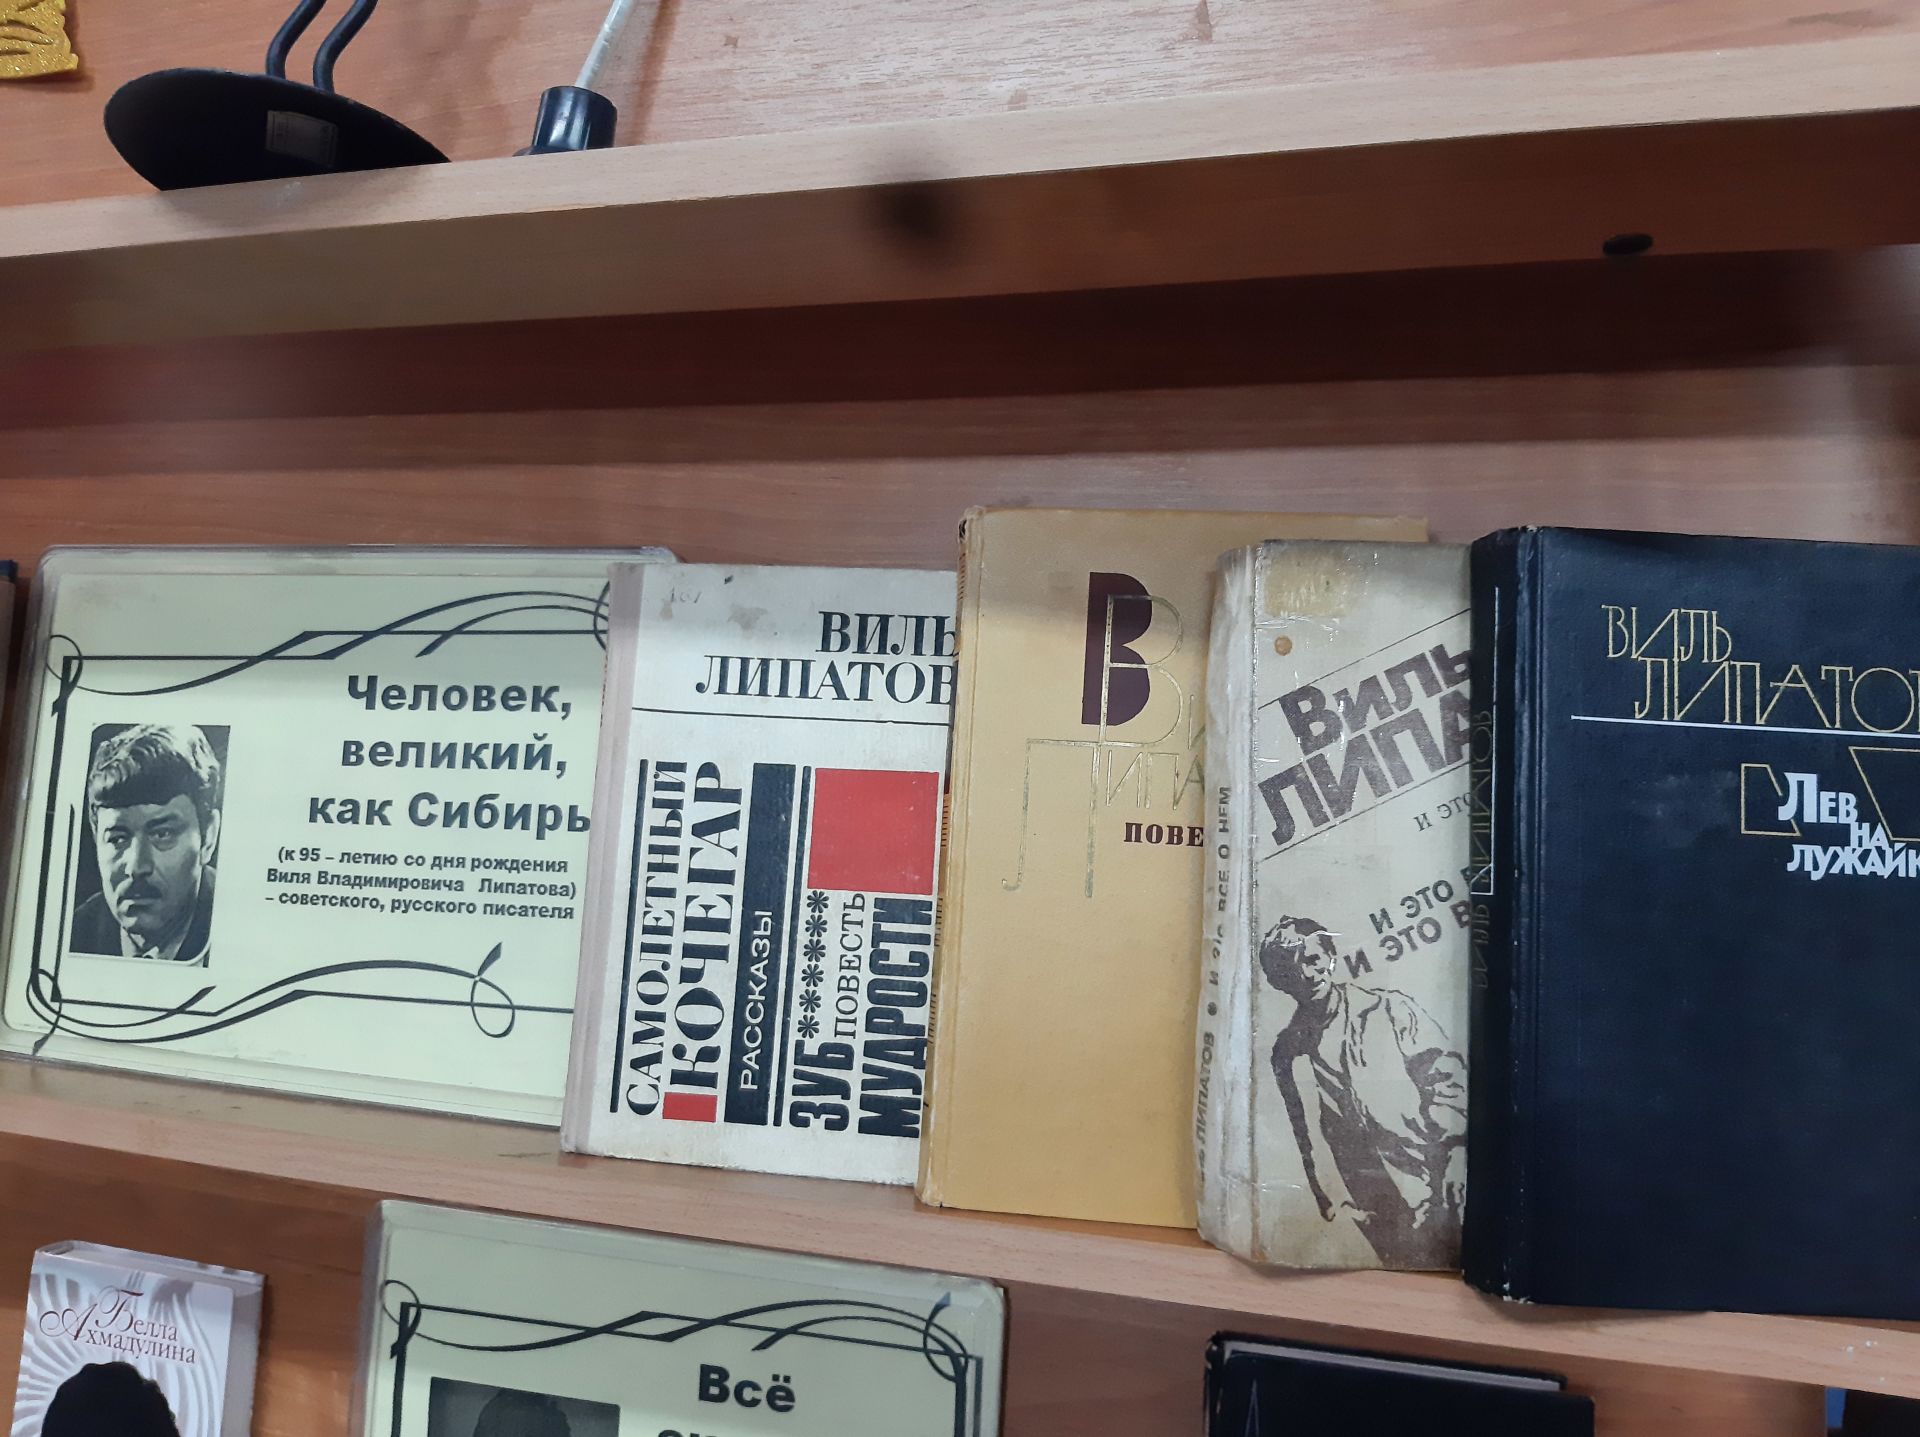 В Лаишевской библиотеке оформлена книжная выставка к 95-летию известного советского писателя